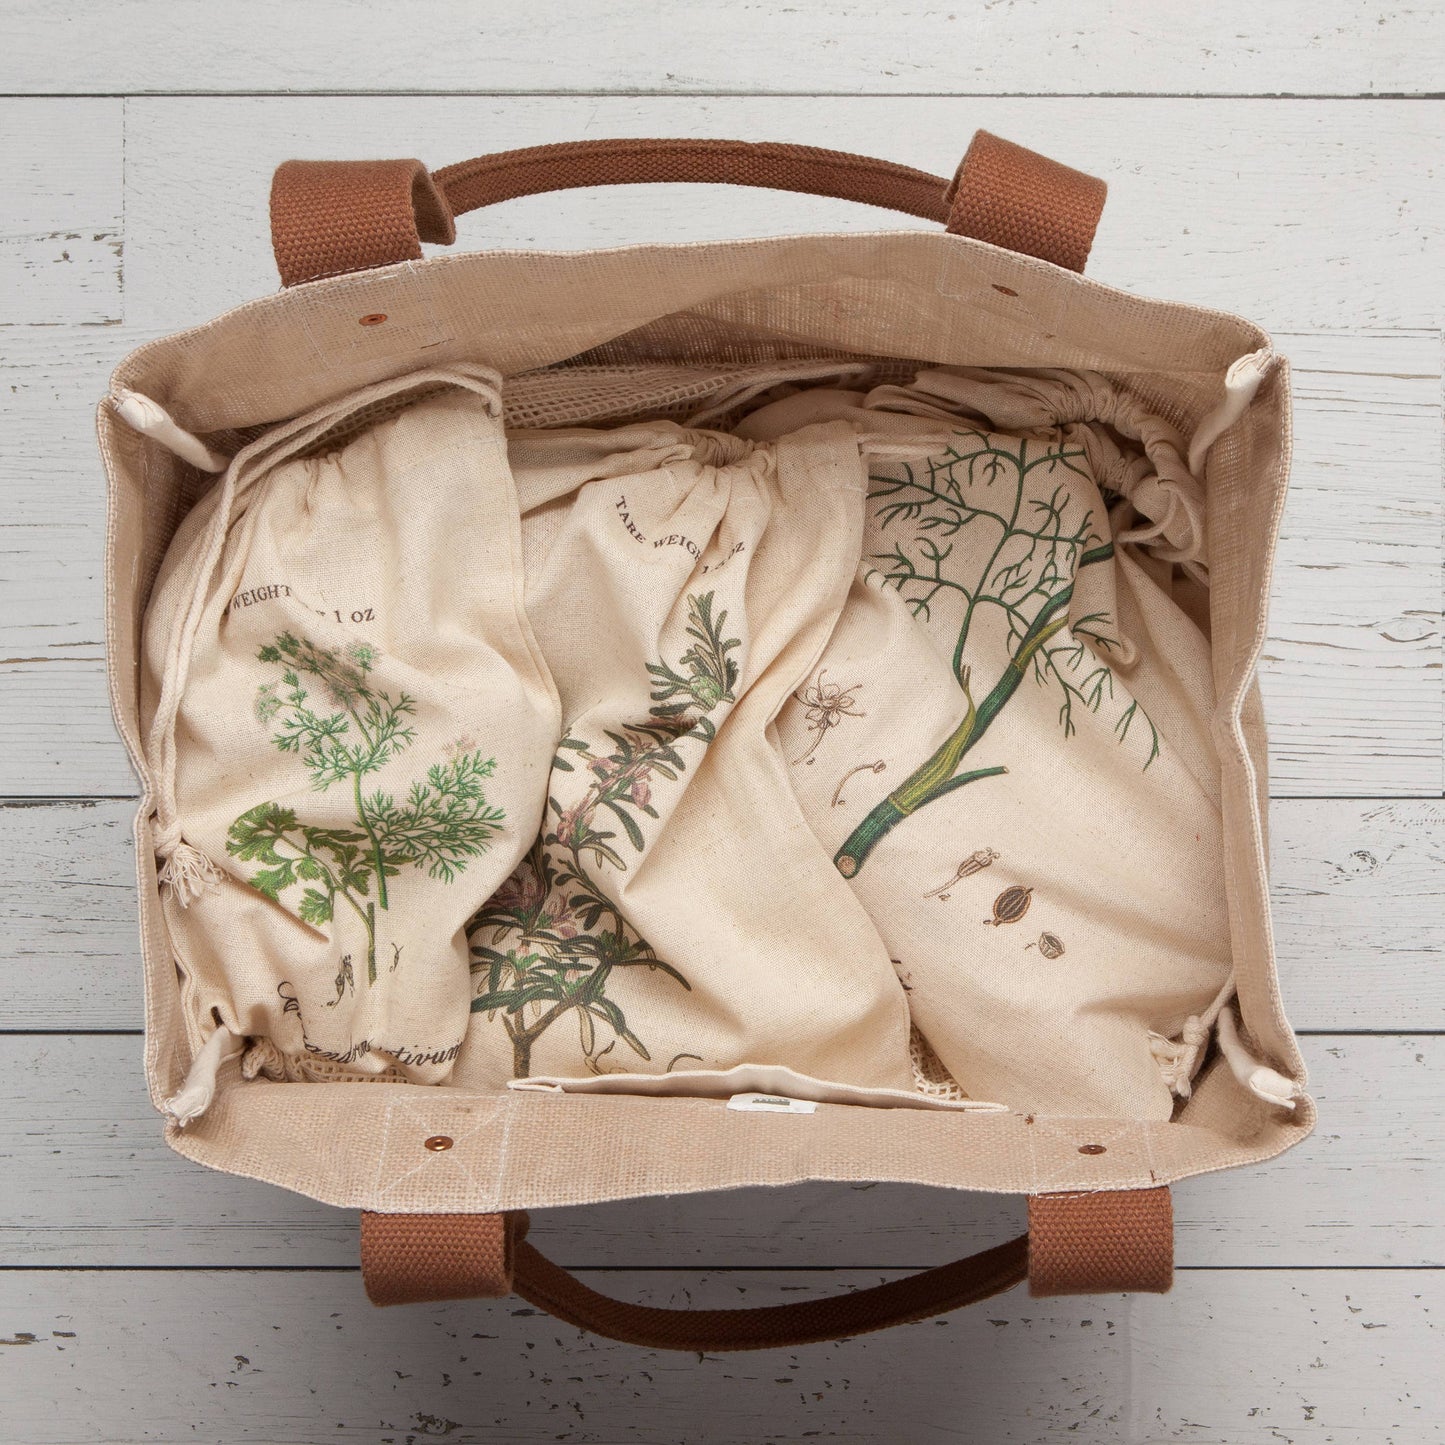 Garden Herbs Reusable Produce Bags Set of 3